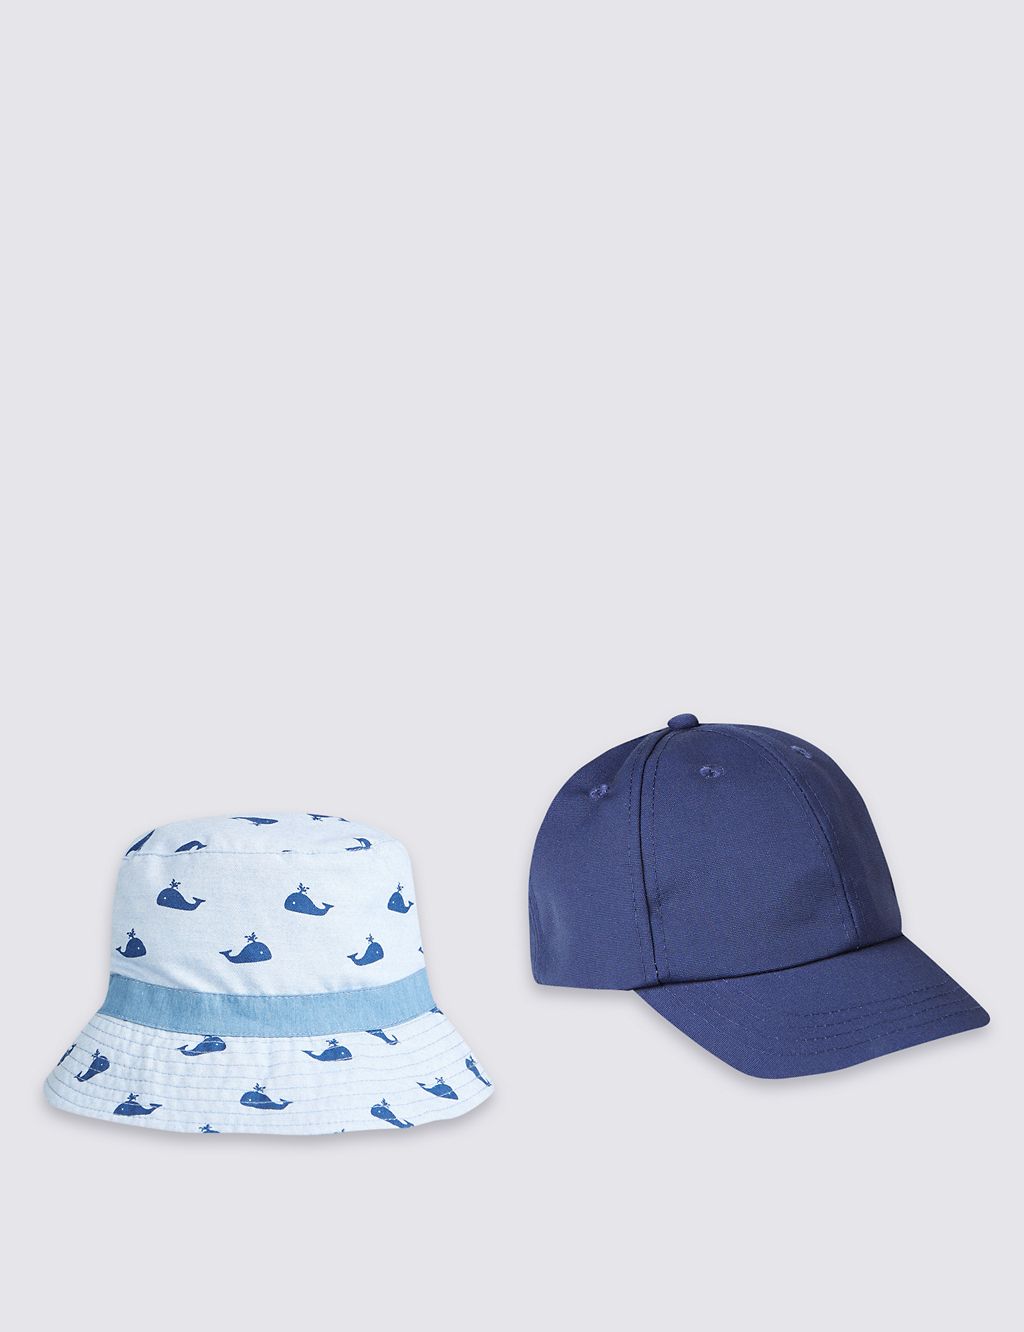 Kids’ 2 Piece Cap & Hat 1 of 1